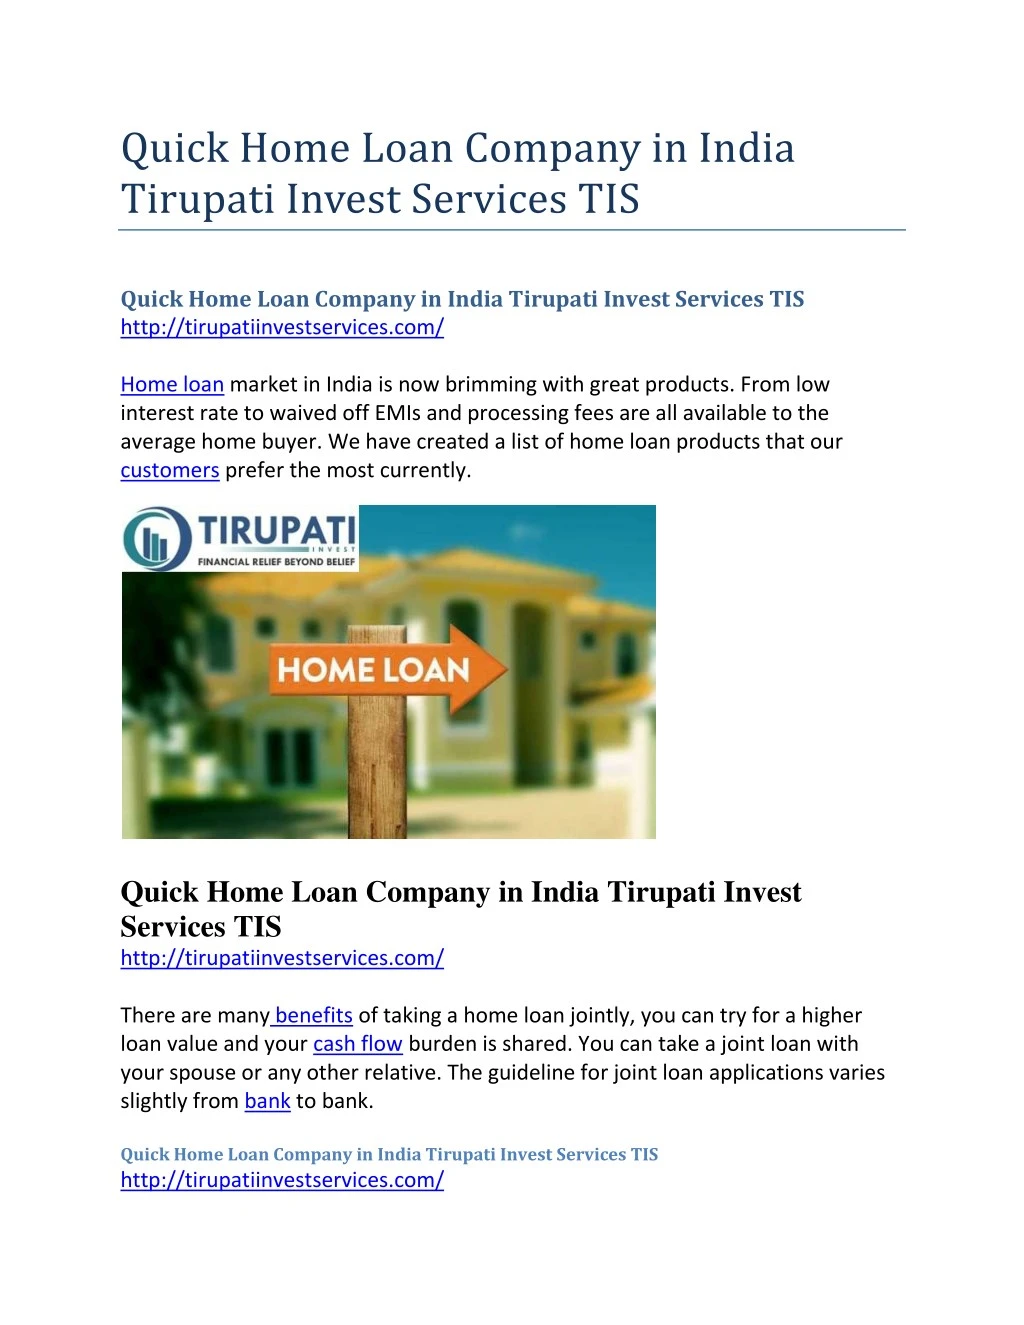 quick home loan company in india tirupati invest